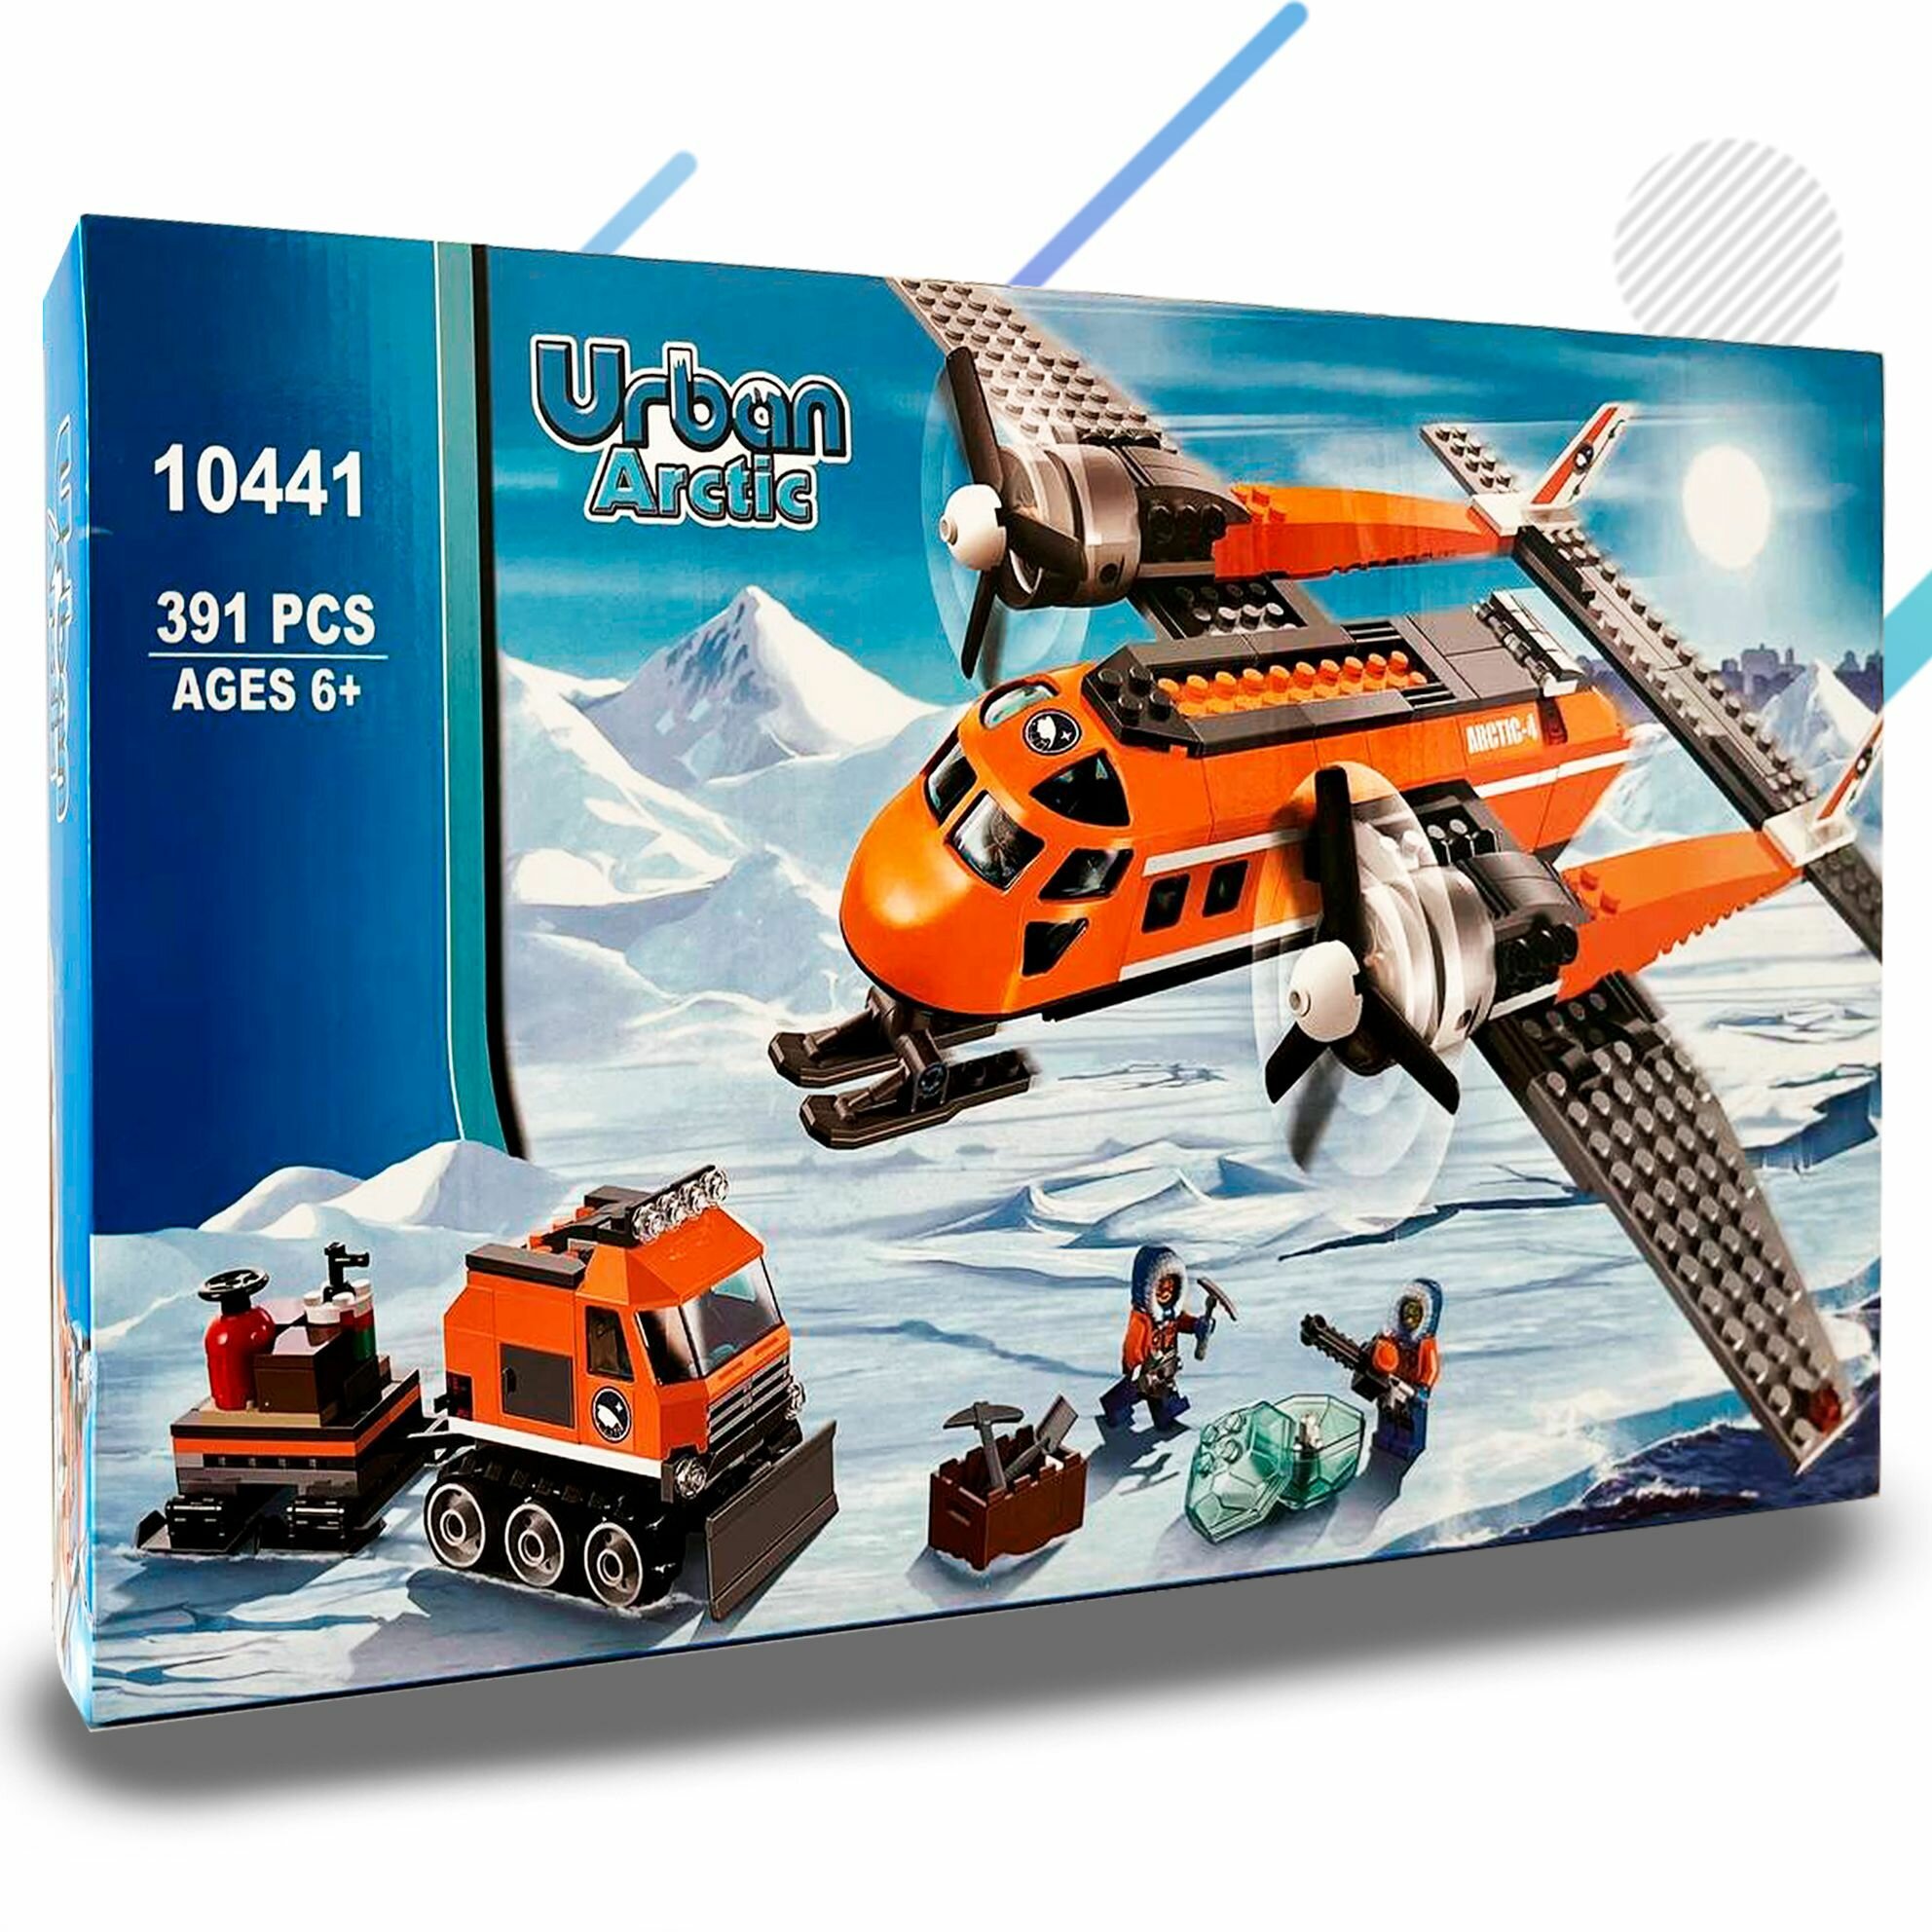 Конструктор Арктический грузовой самолет 60064 Сити 391 детали / Подарочный игровой набор для детей взрослых, мальчиков и девочек